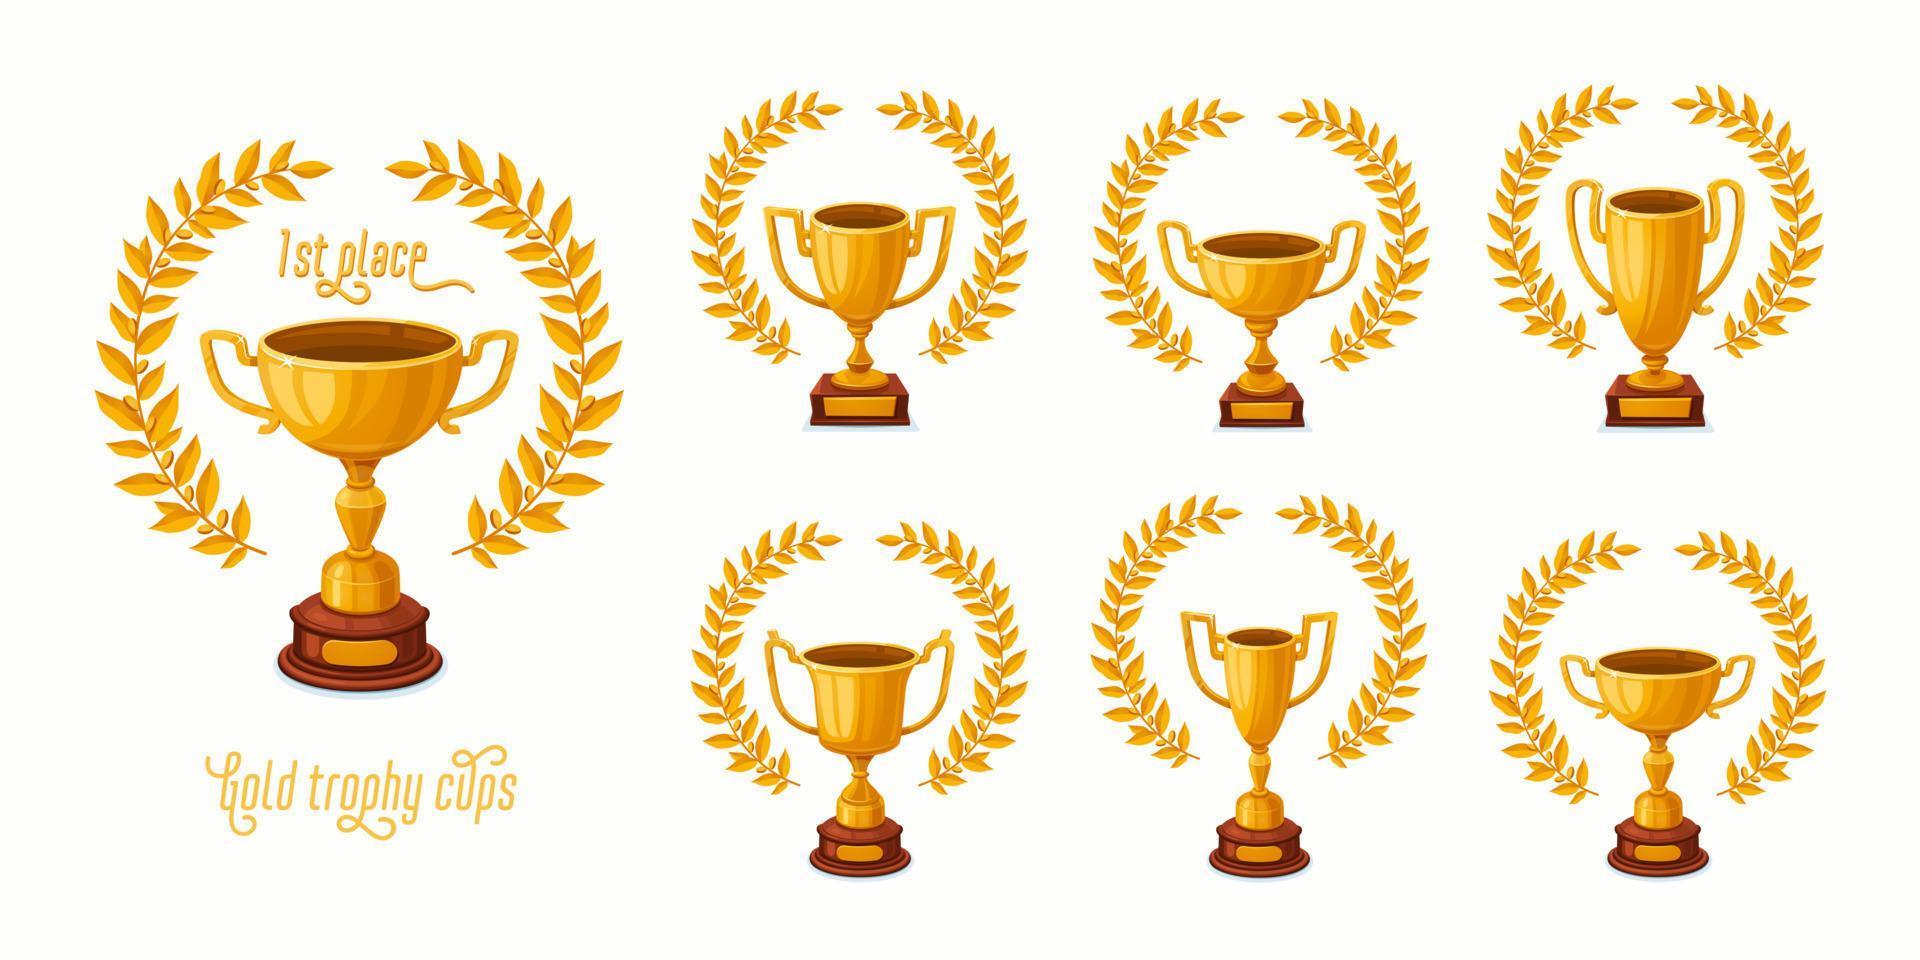 copas de trofeo de oro con coronas de laurel. copas de trofeos con diferentes formas - trofeos ganadores del 1er lugar. ilustración vectorial de estilo de dibujos animados. vector